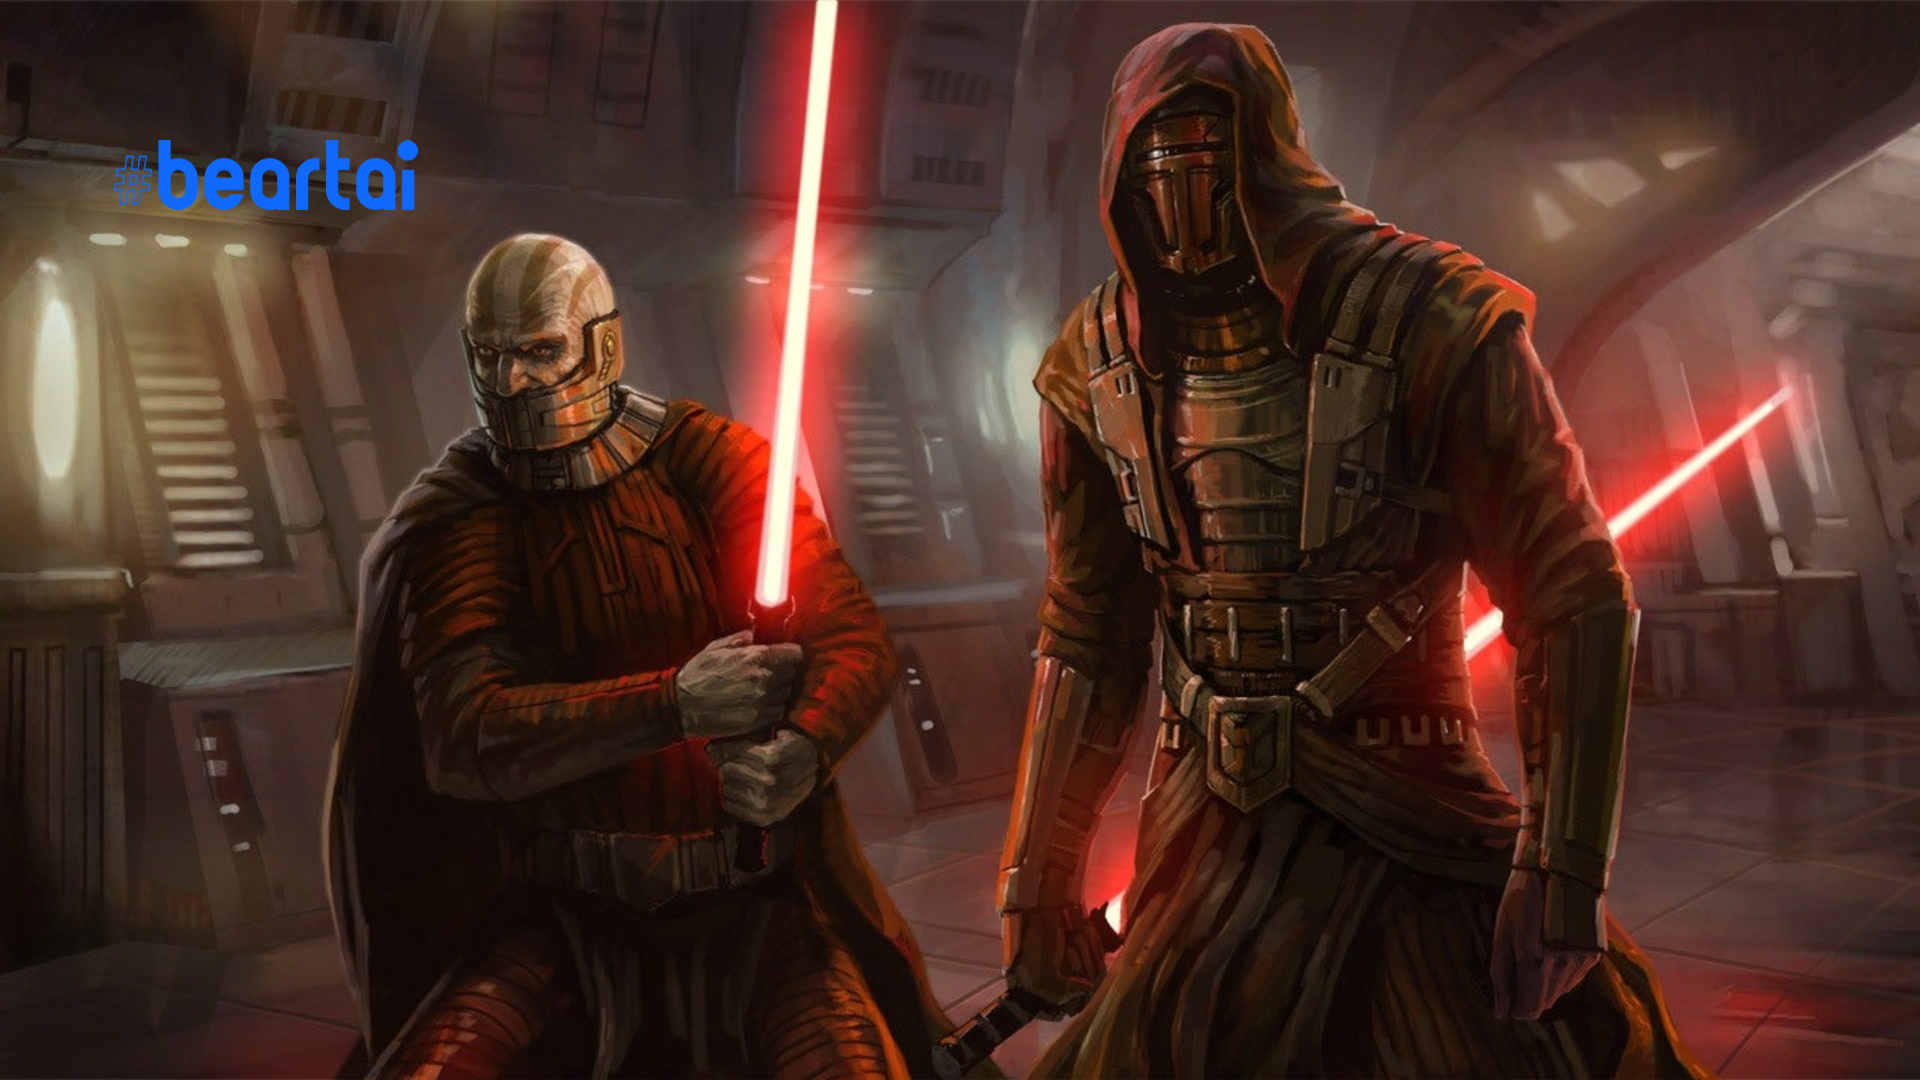 มีข่าวลือ Star Wars: Knights of the Old Republic กำลังถูกพัฒนา แต่ไม่ใช่จาก EA